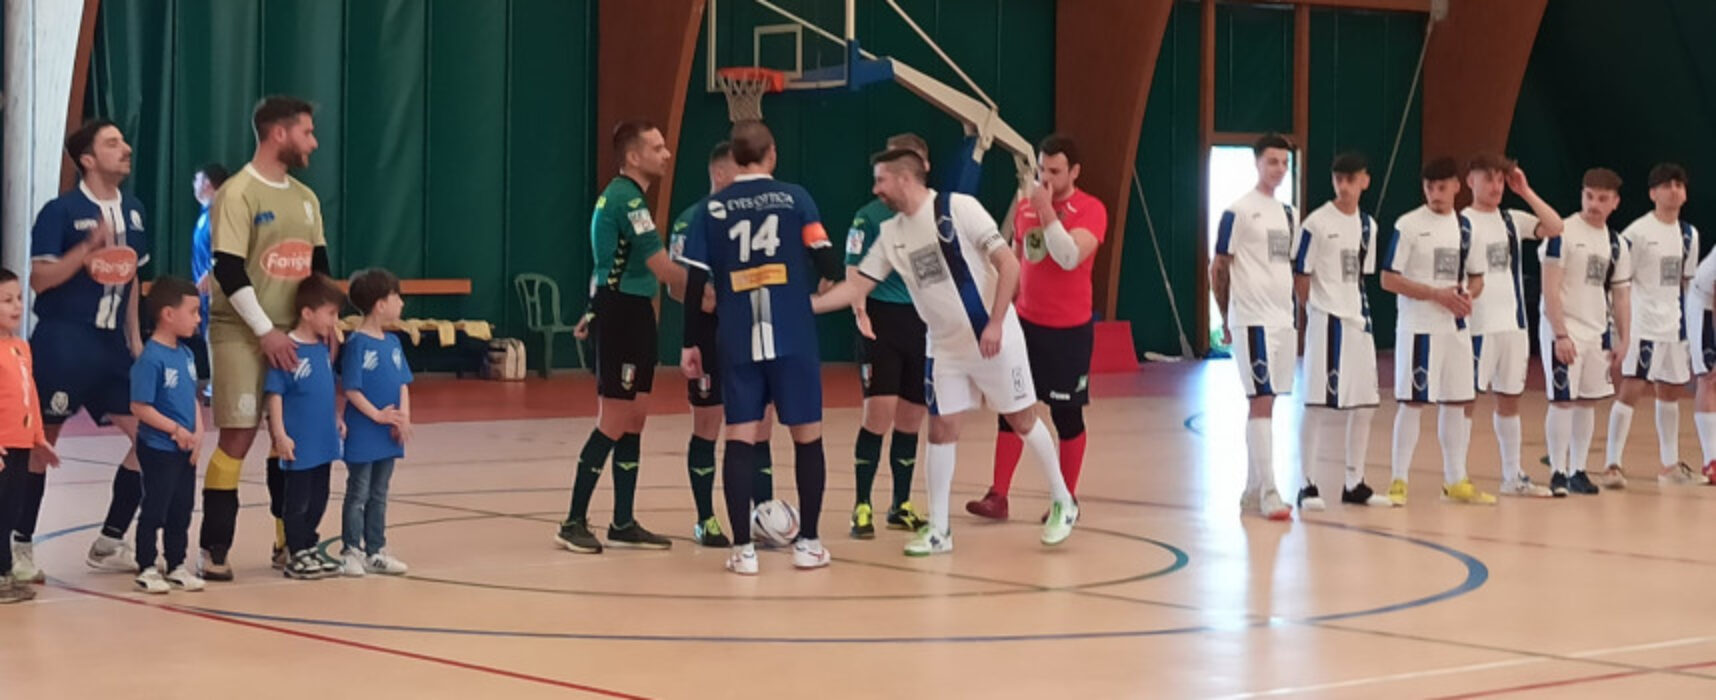 Futsal: Cinco e Nettuno sconfitte in casa / RISULTATI E CLASSIFICA